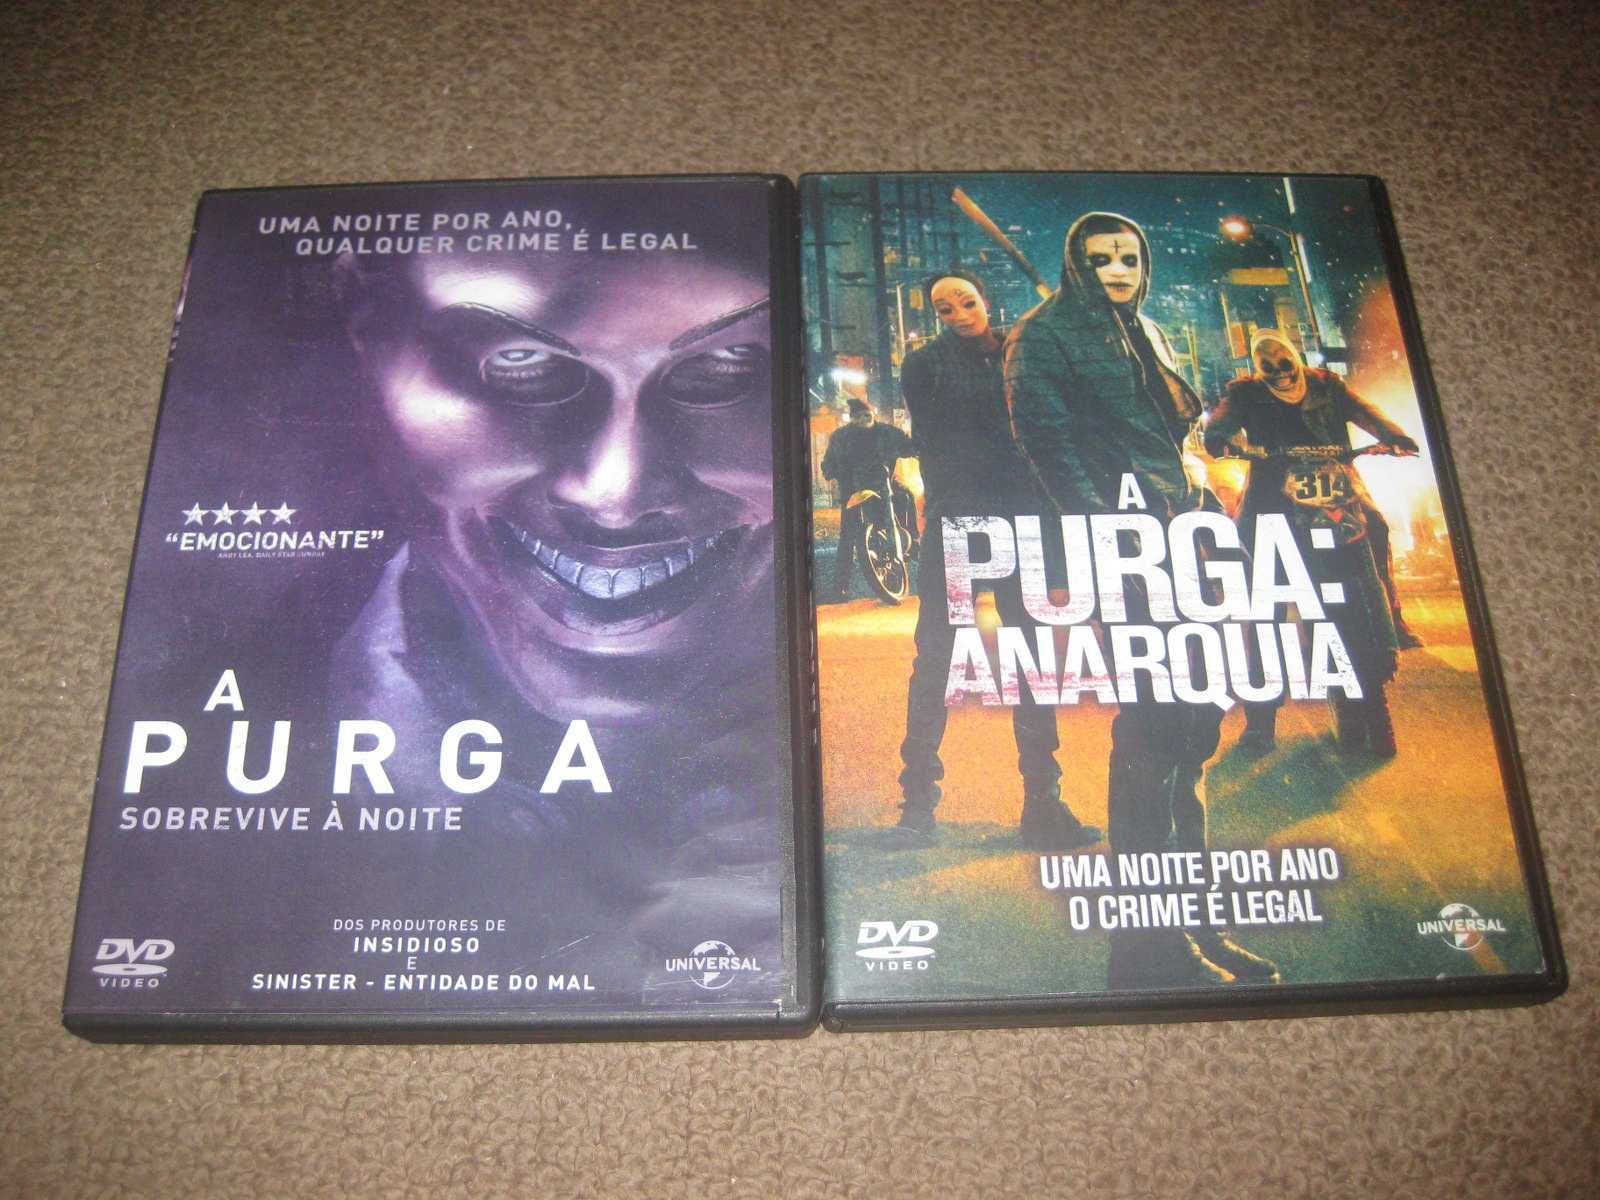 Colecção em DVD "A Purga"